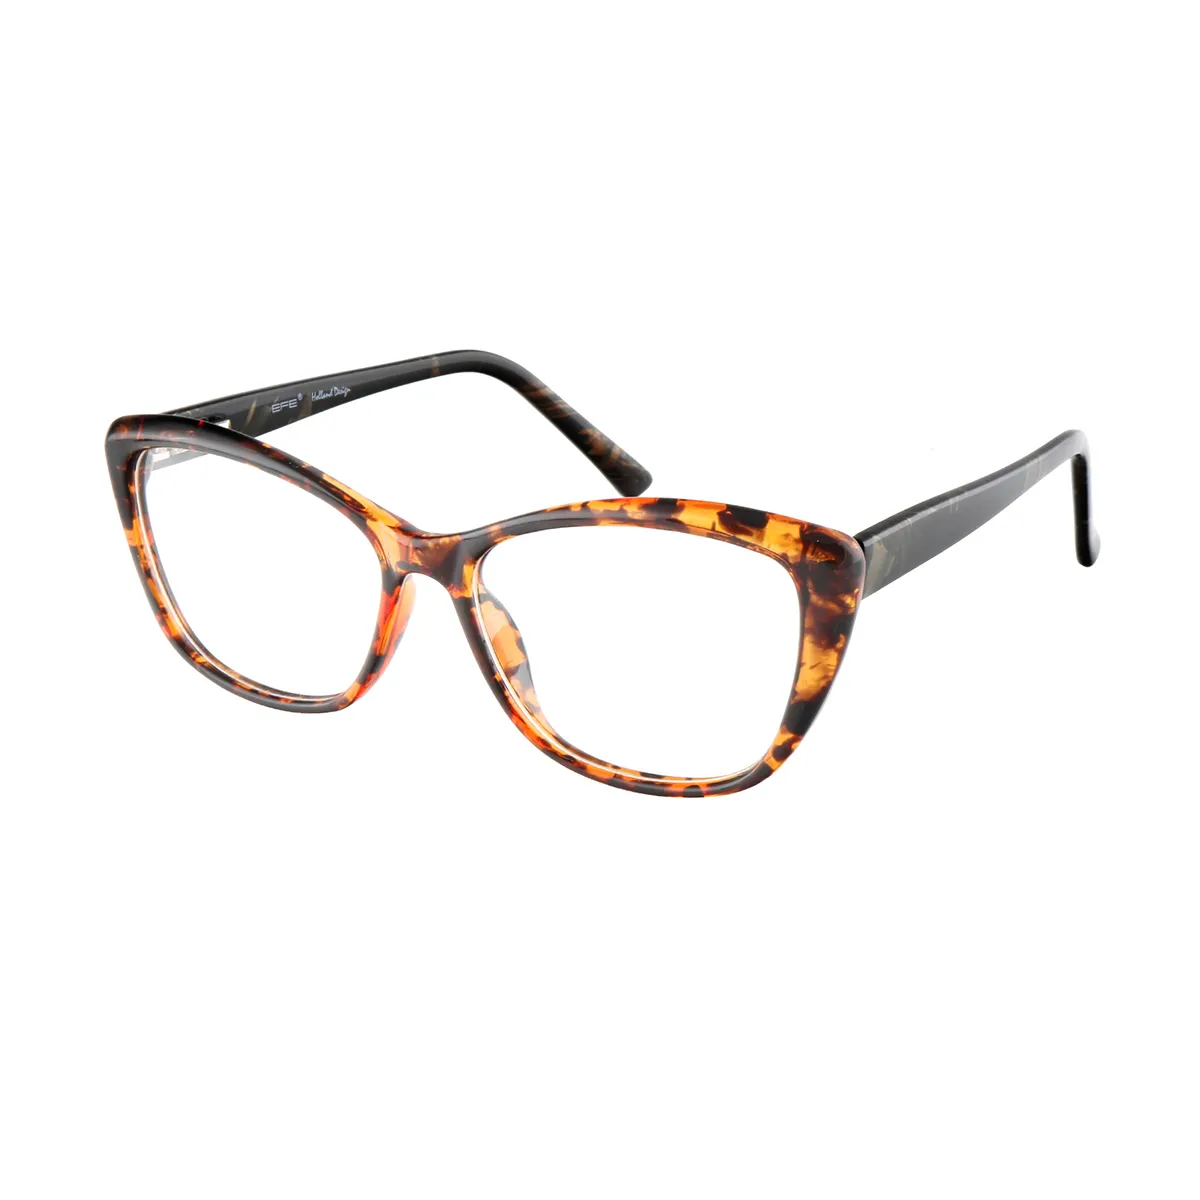 Naylor - Square Tortoiseshell-black Glasses for Women